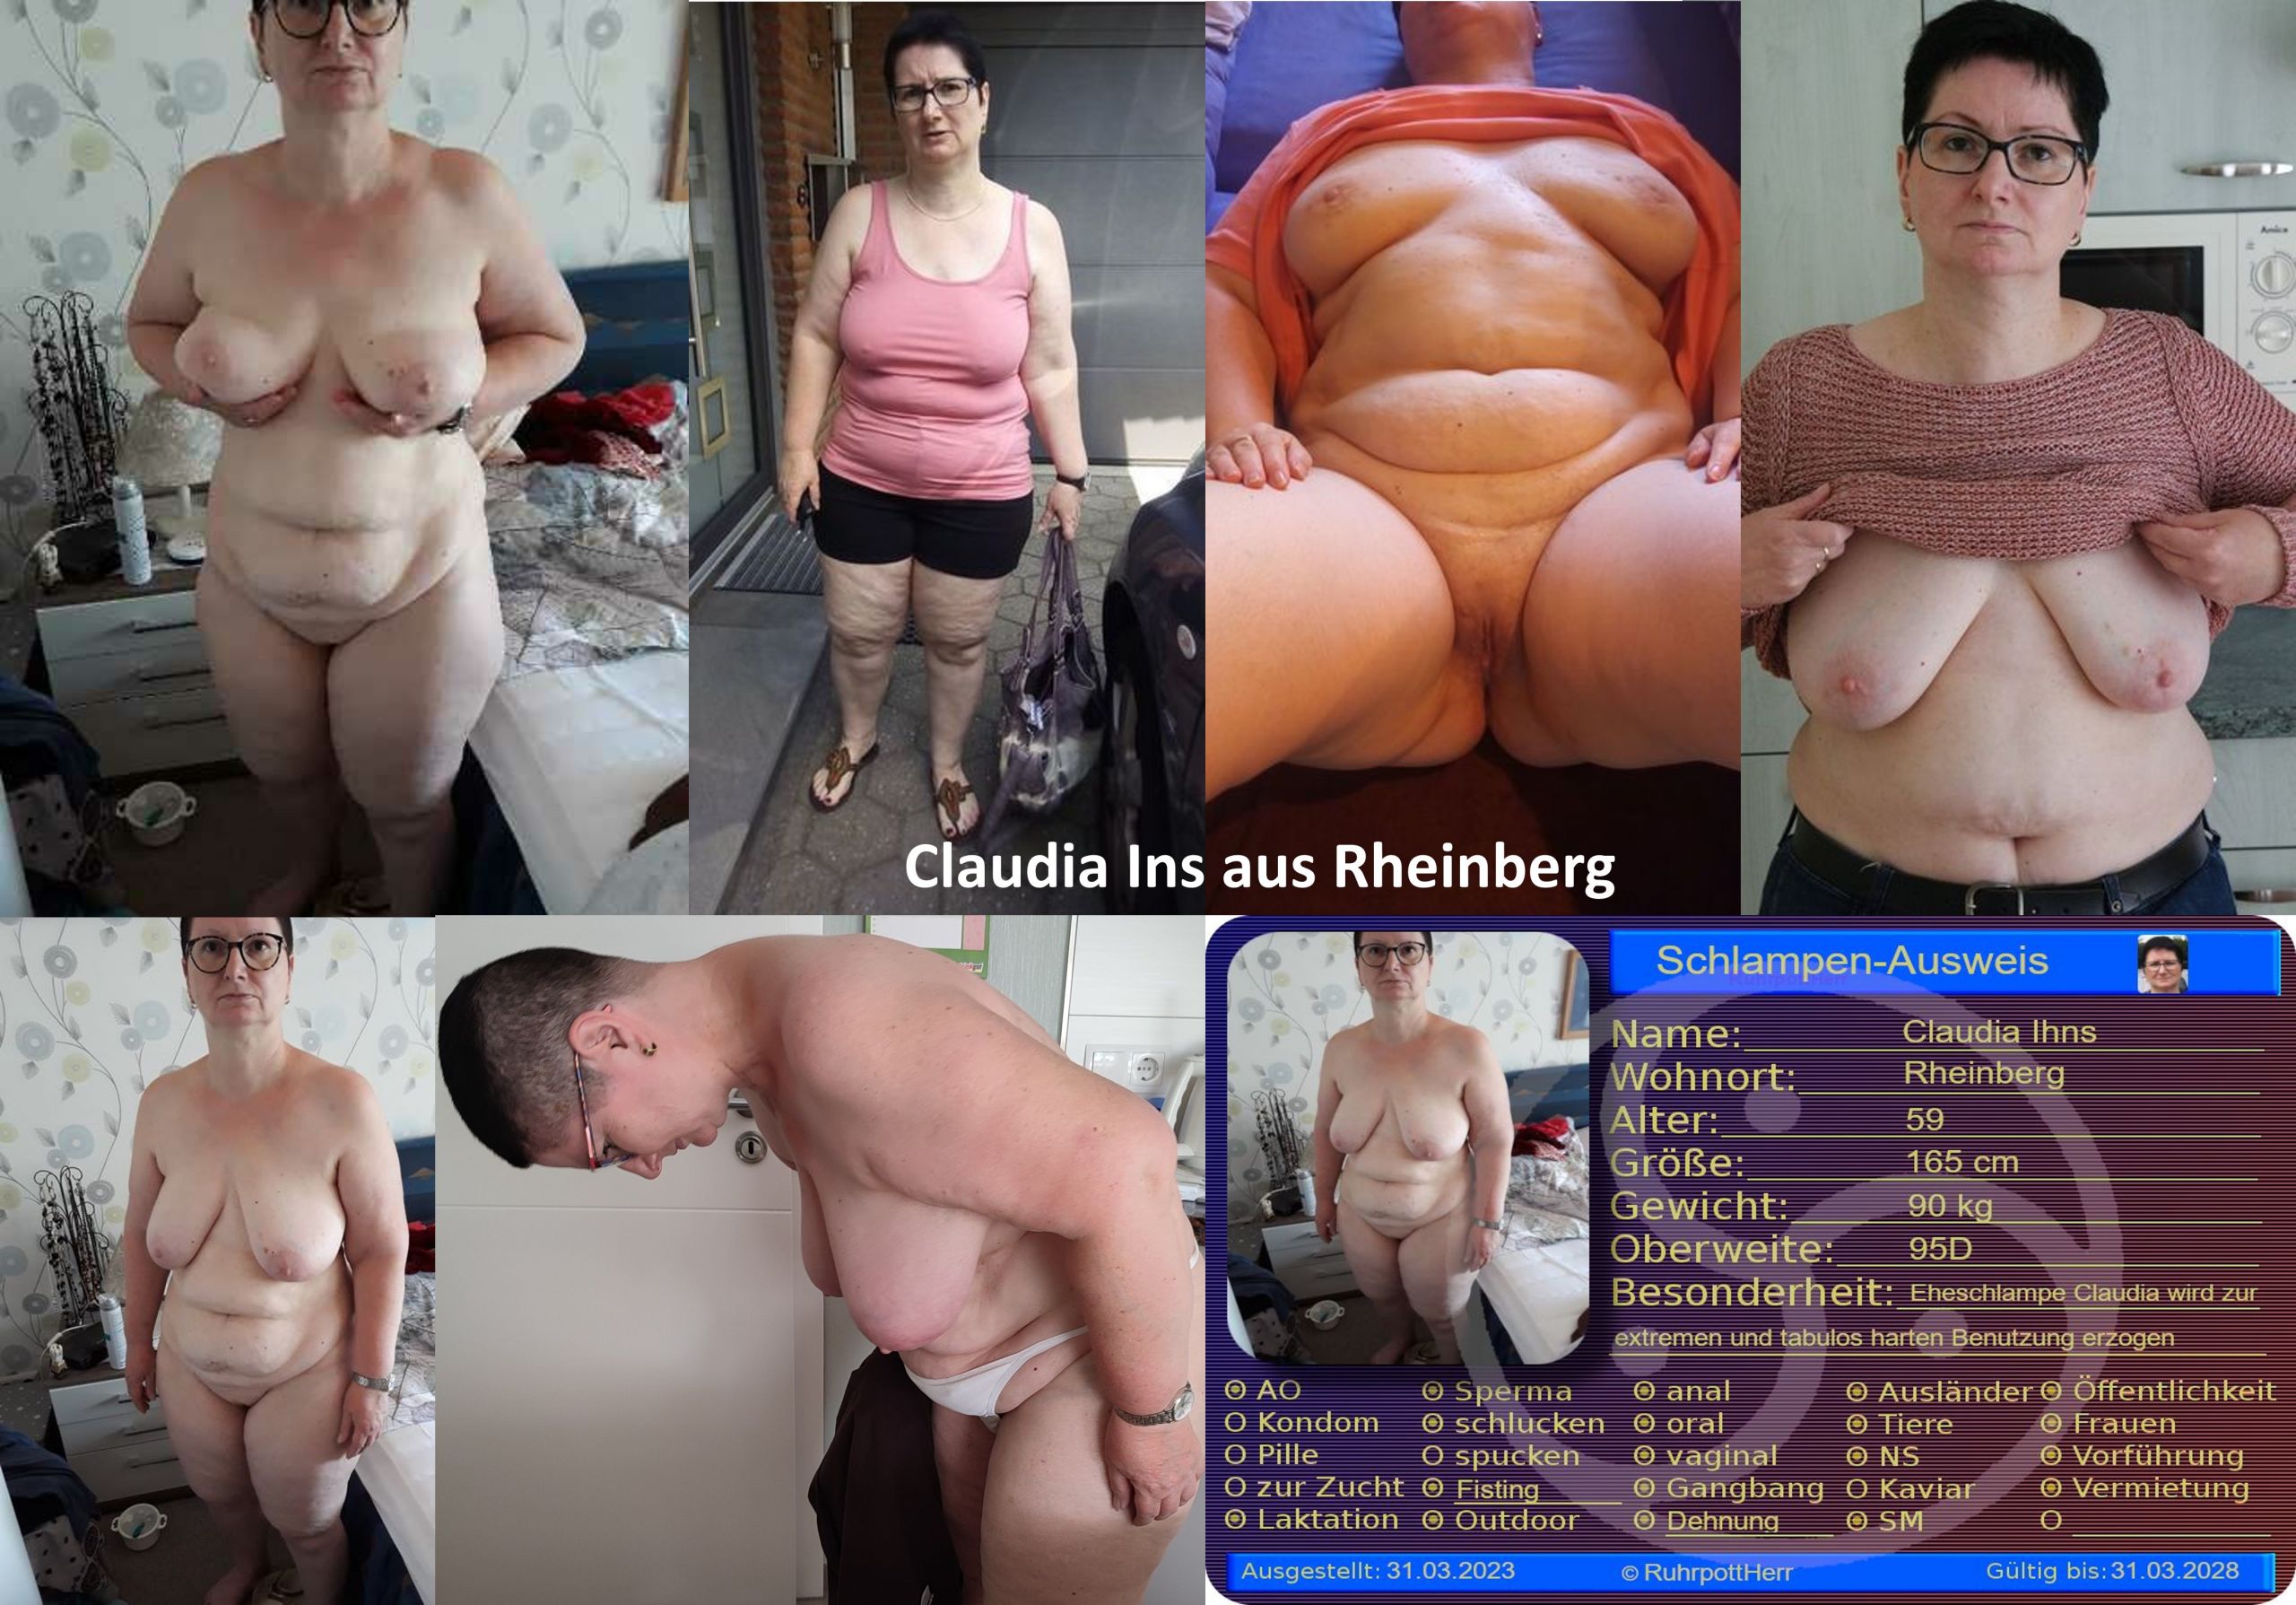 Claudia Ihns aus Rheinberg